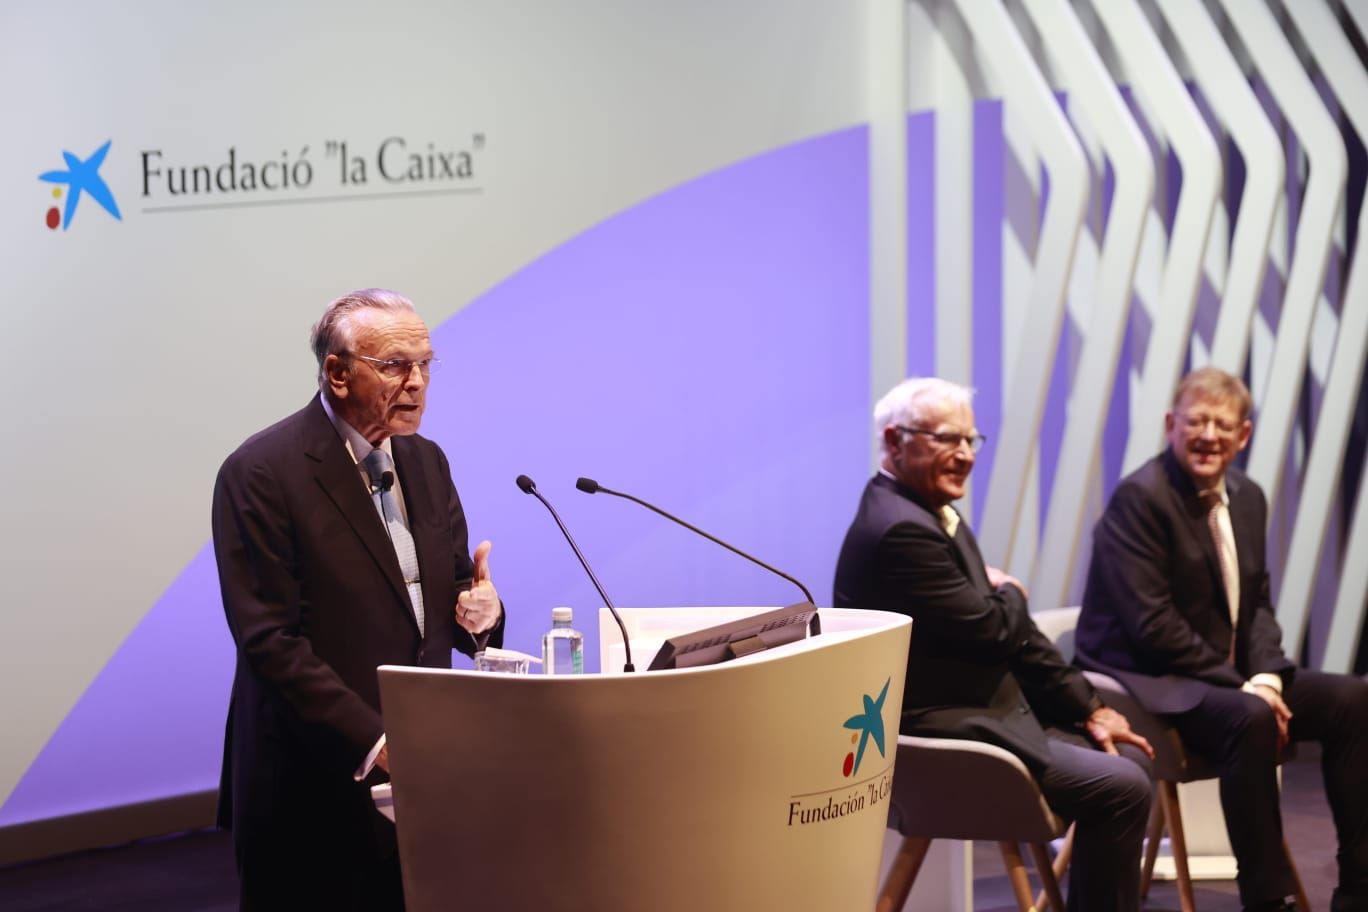 El CaixaForum de València  se presenta en sociedad